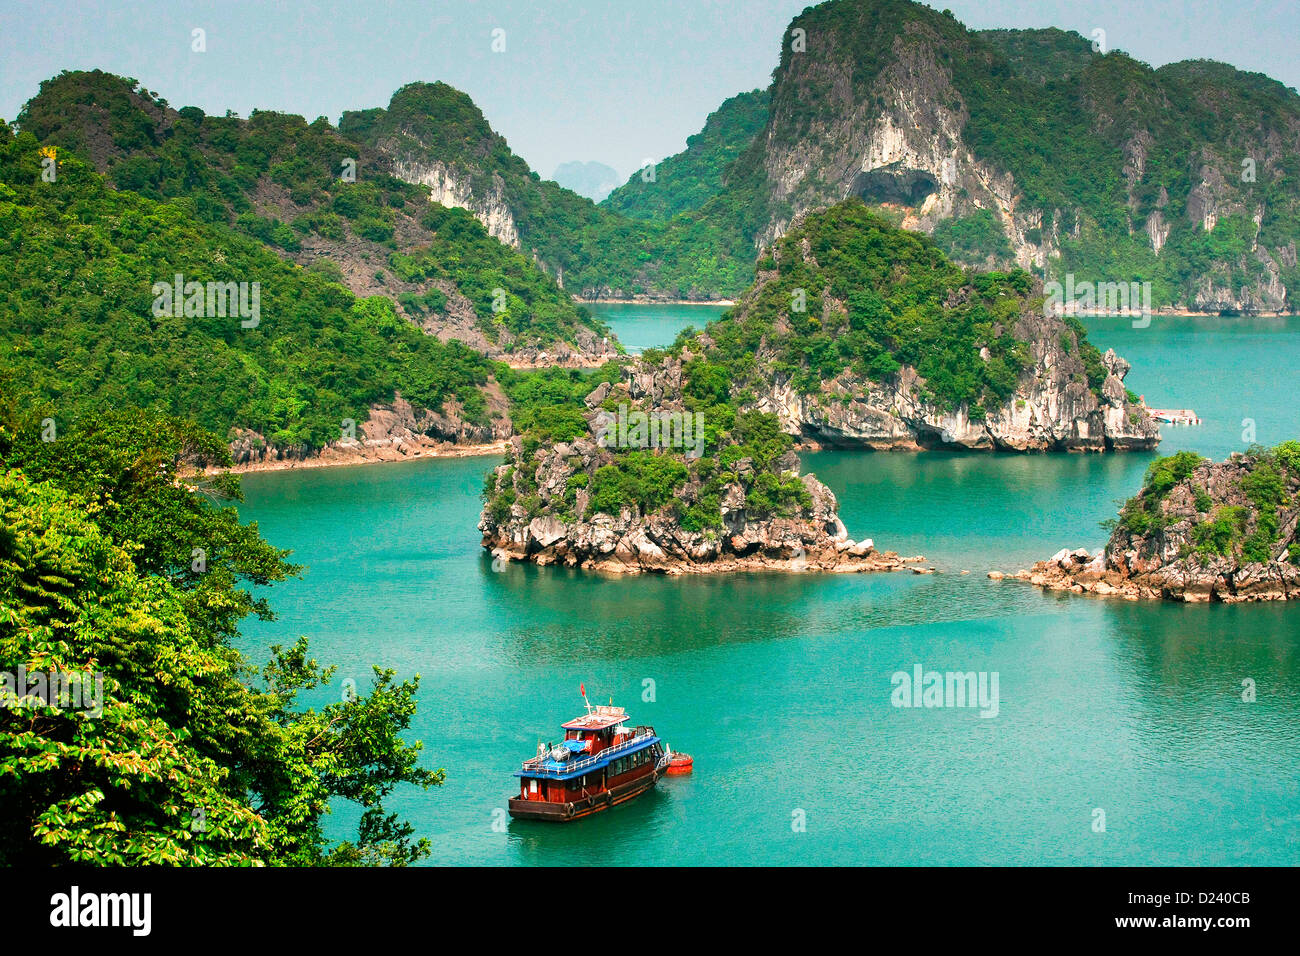 Halong-Bucht, Golf von Tonkin, Vietnam, Asien Stockfotografie - Alamy